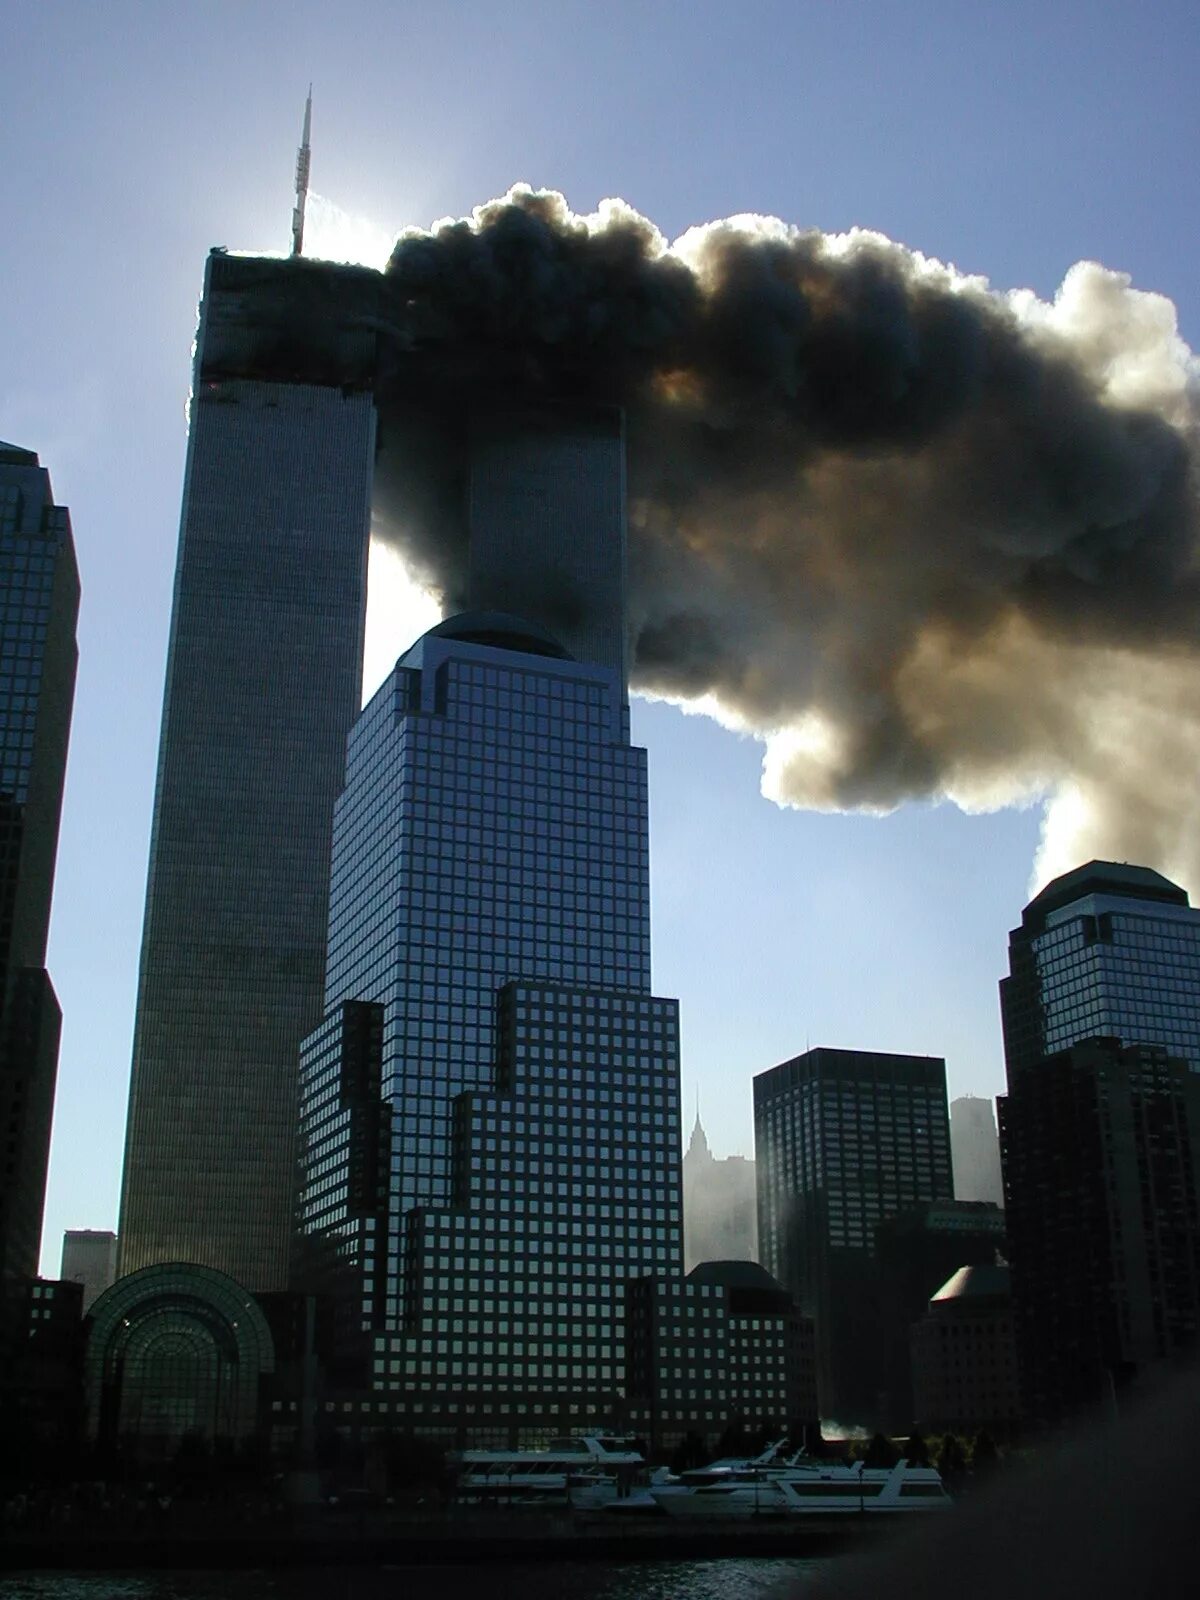 Building forget. Башни Близнецы 11 сентября. ВТЦ Нью-Йорк башни Близнецы. Всемирный торговый центр в Нью-Йорке 11 сентября.